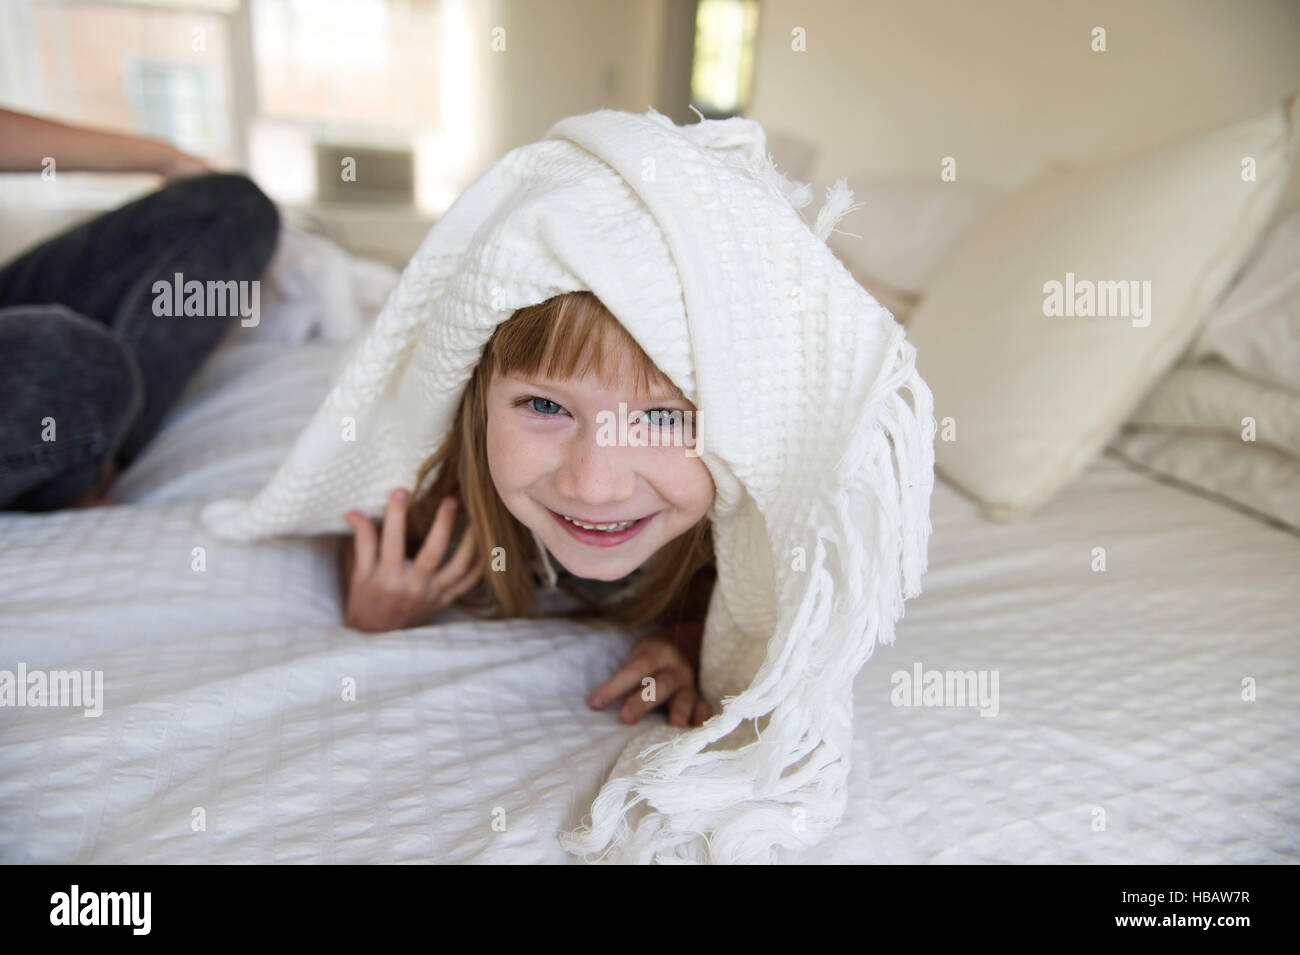 Young Girl peeking chef de sous couverture sur lit Banque D'Images